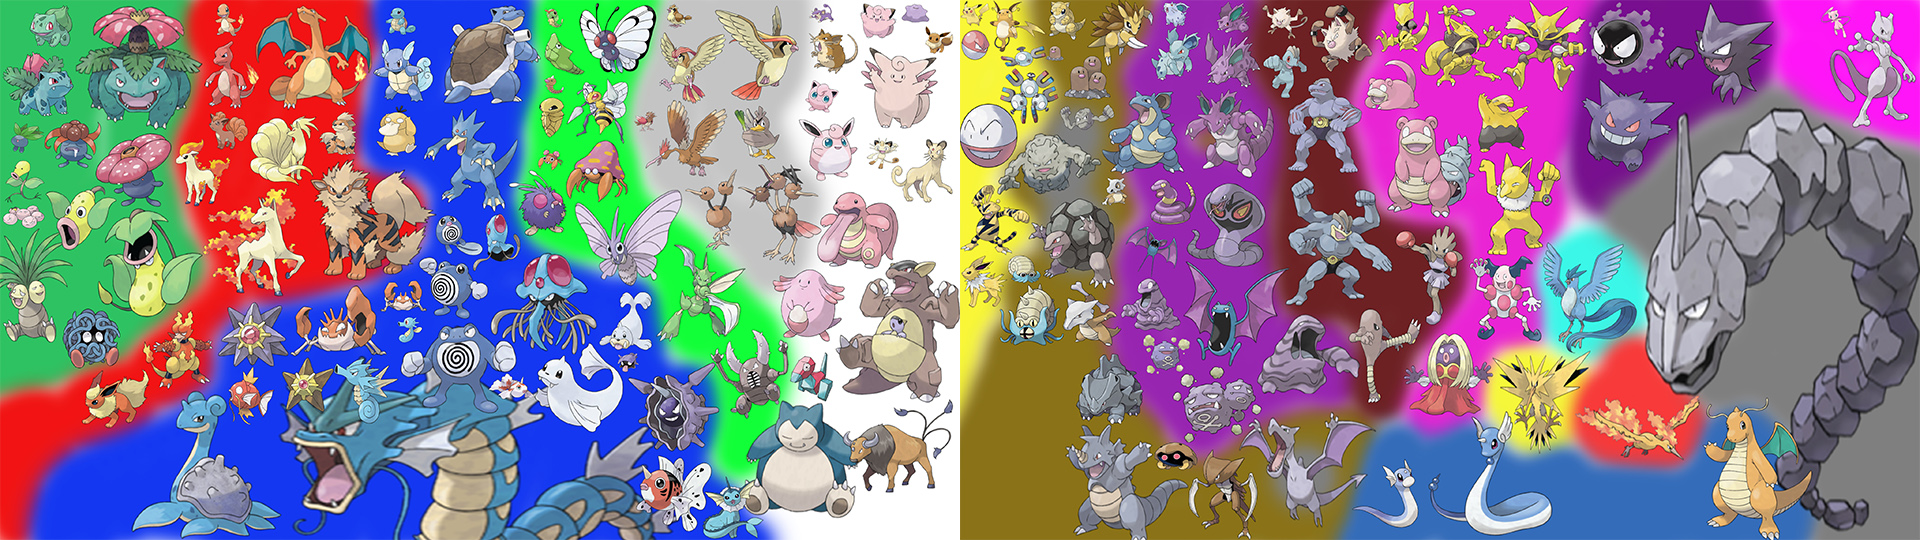 Alle Pokémon aus der 1.Generation im Grössenvergleich